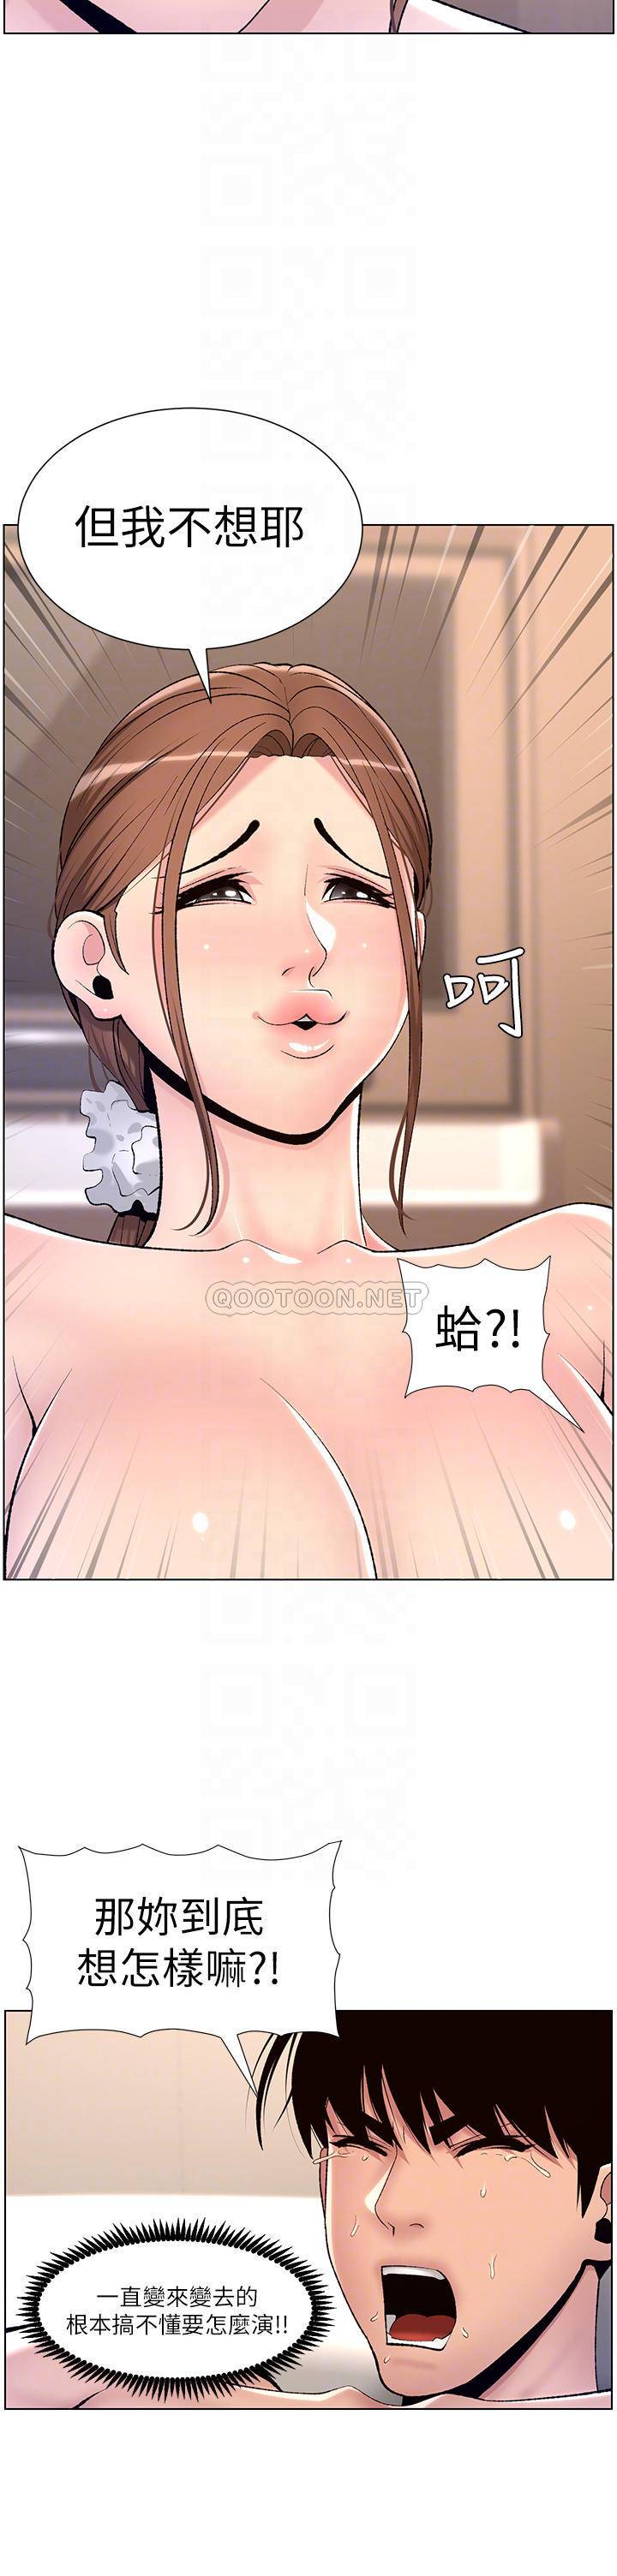 韩国污漫画 帝王App 第16话 你要当我的按摩棒吗? 10